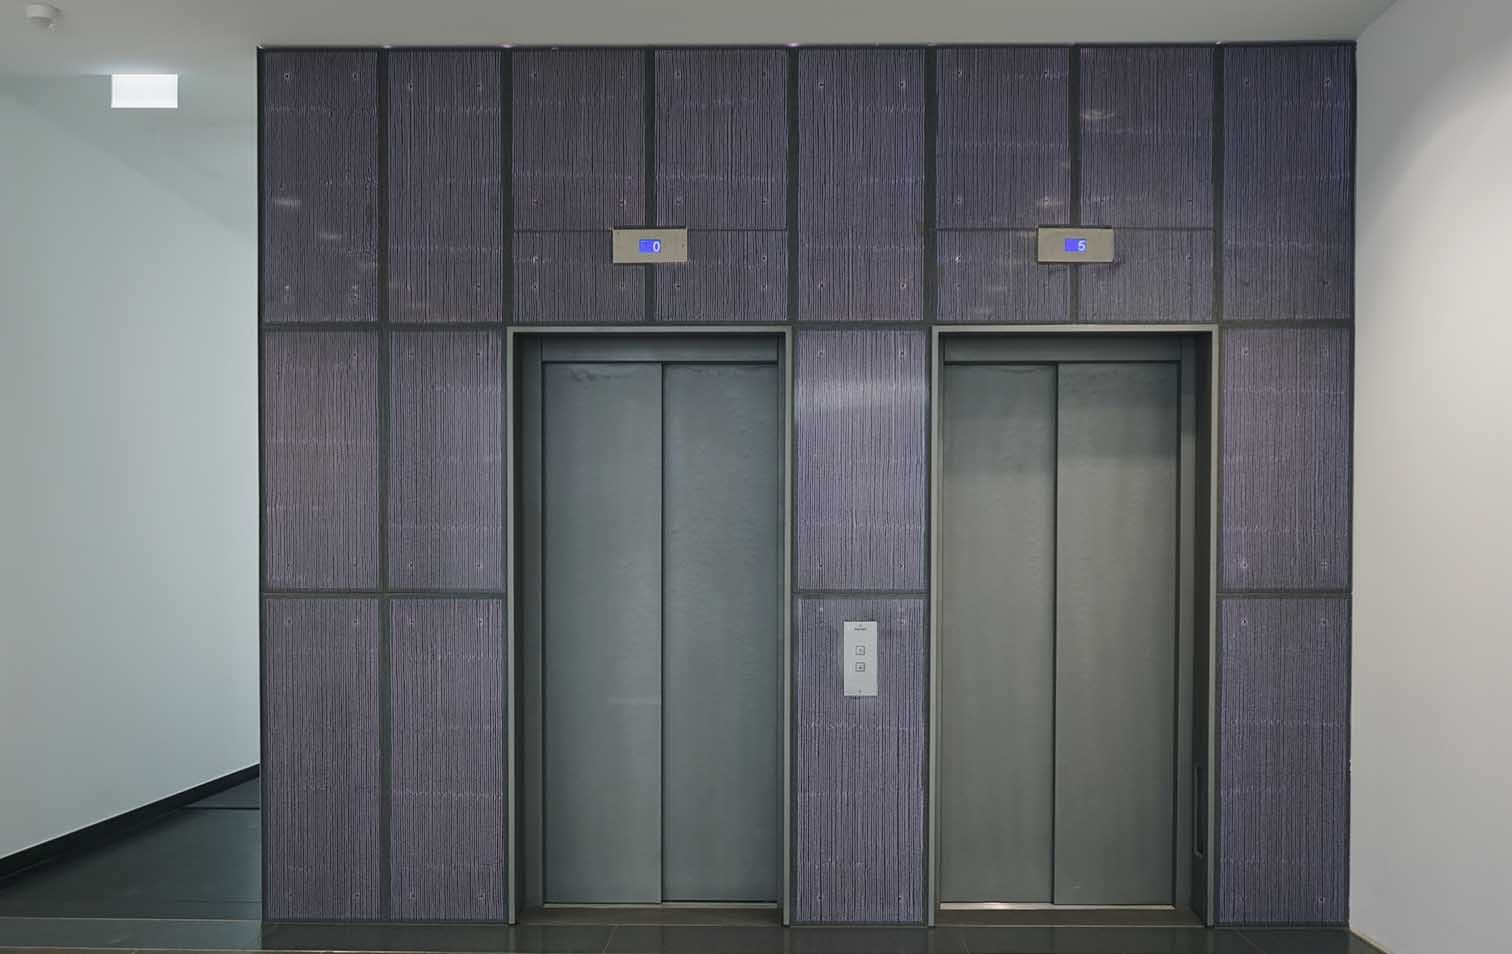 Liftbereich im Flixbus-Firmensitz in München